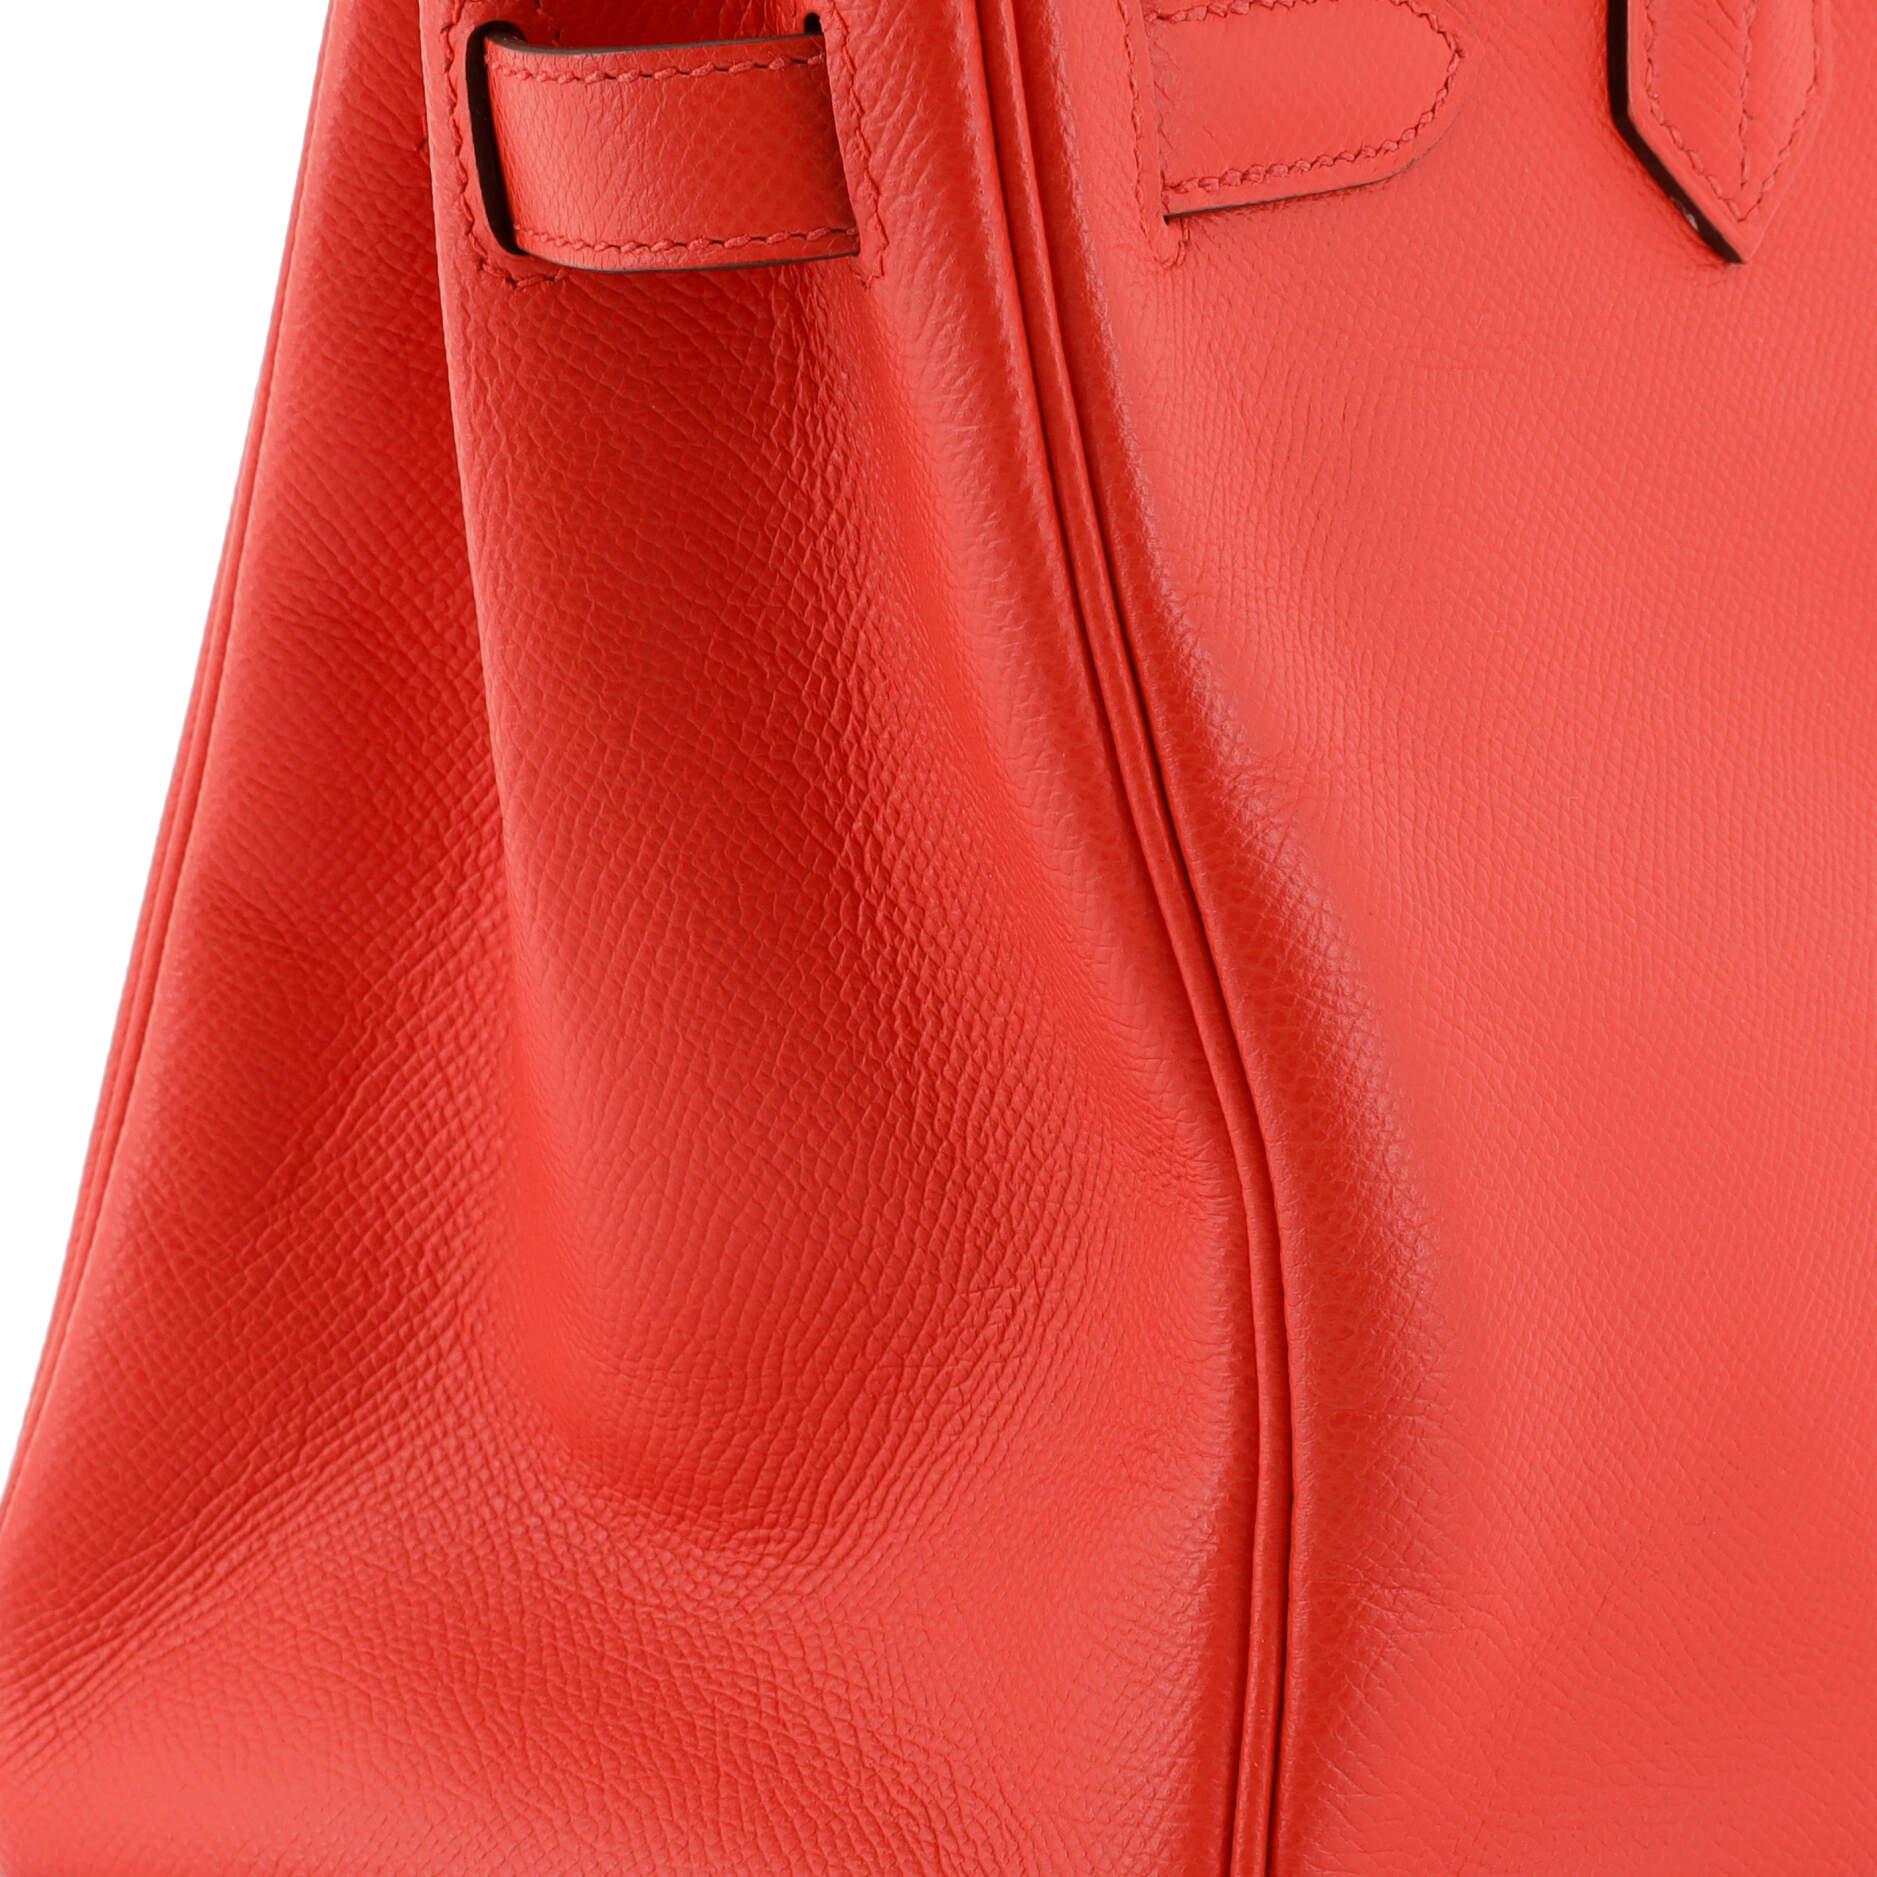 Hermes Birkin Handbag Rouge De Coeur Epsom with Palladium Hardware 30 3